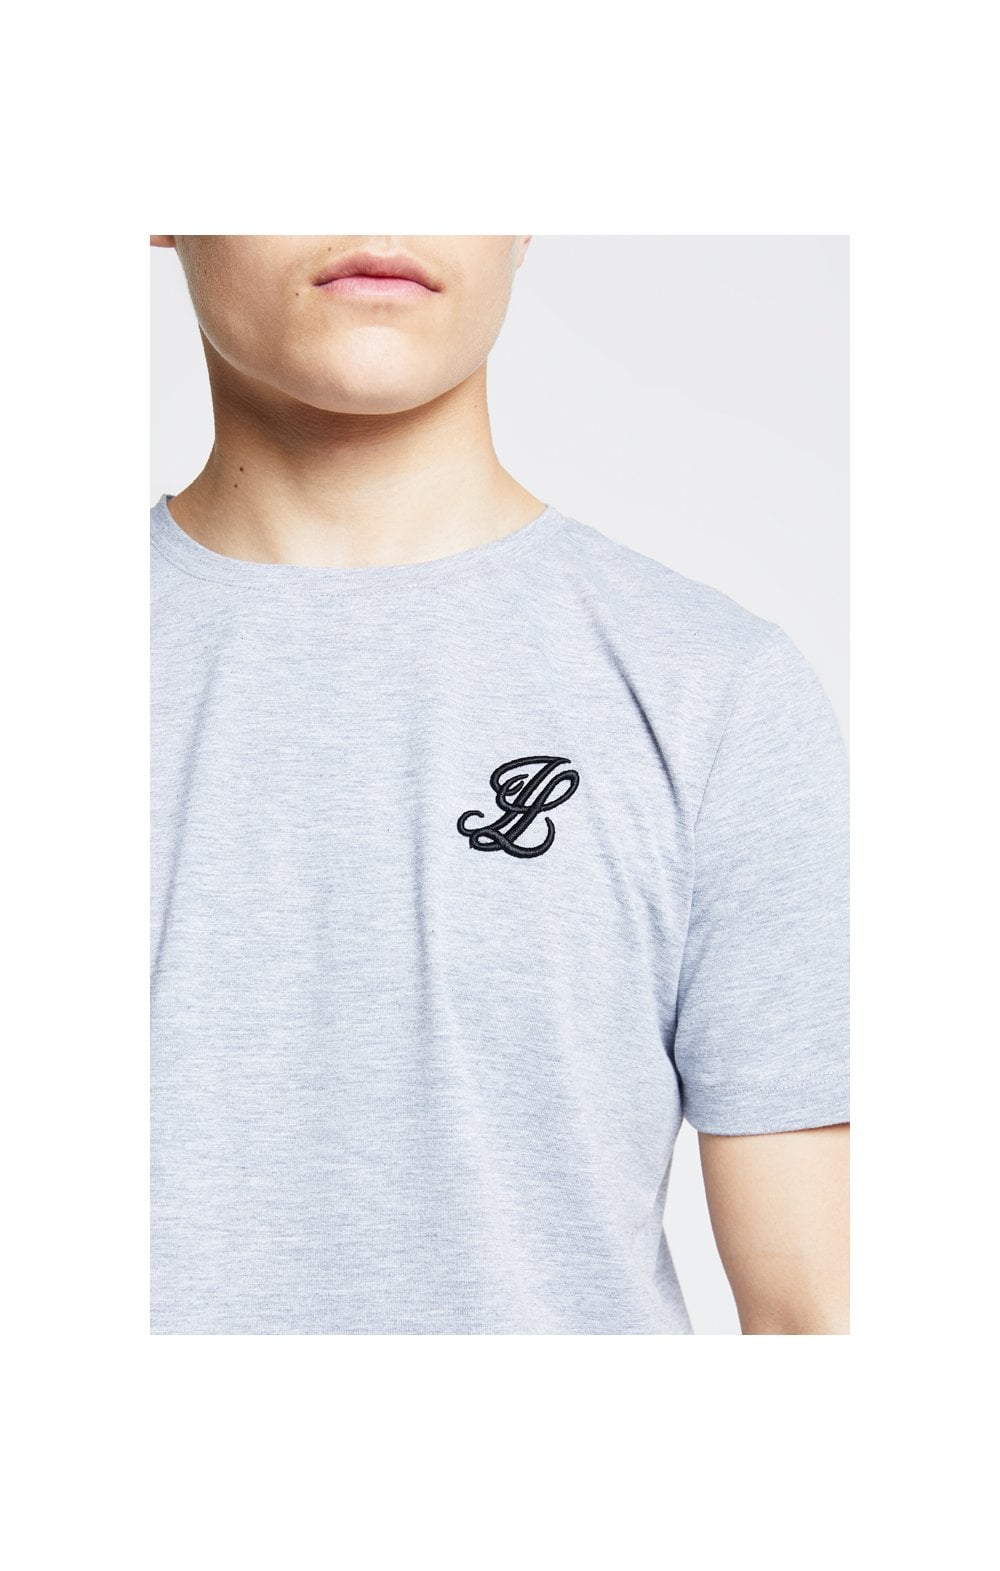 Illusive London T-Shirt - Khaki (1)